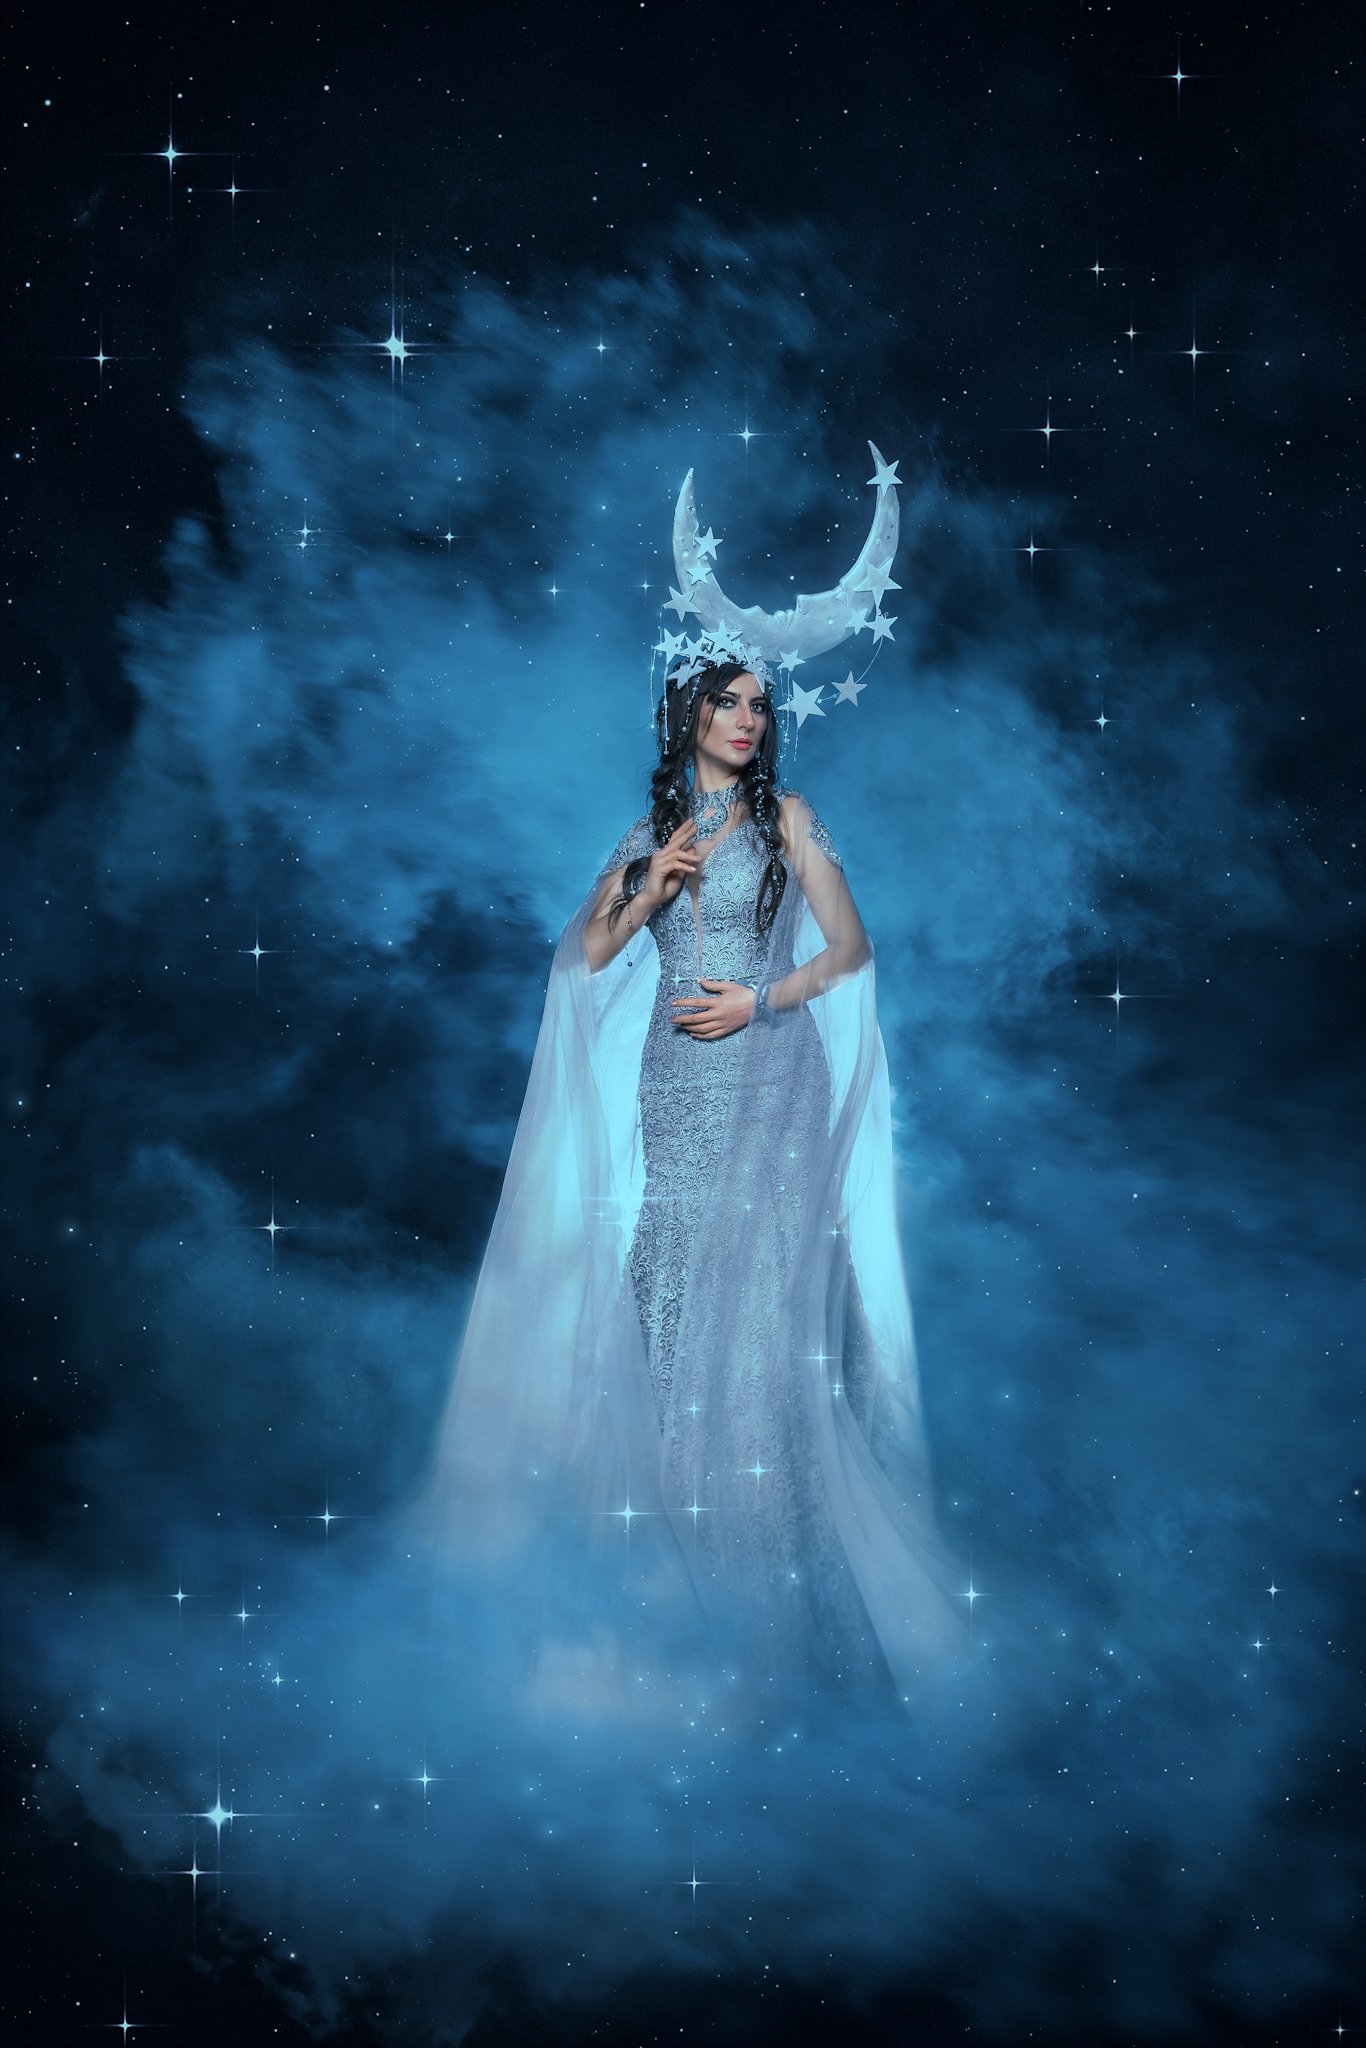 Луна, богиня, миф, сказка, история, волшебство, портрет, блёстки, голубой, синий, сияние, платье, нимб, нимфа, фея, Софья Ознобихина